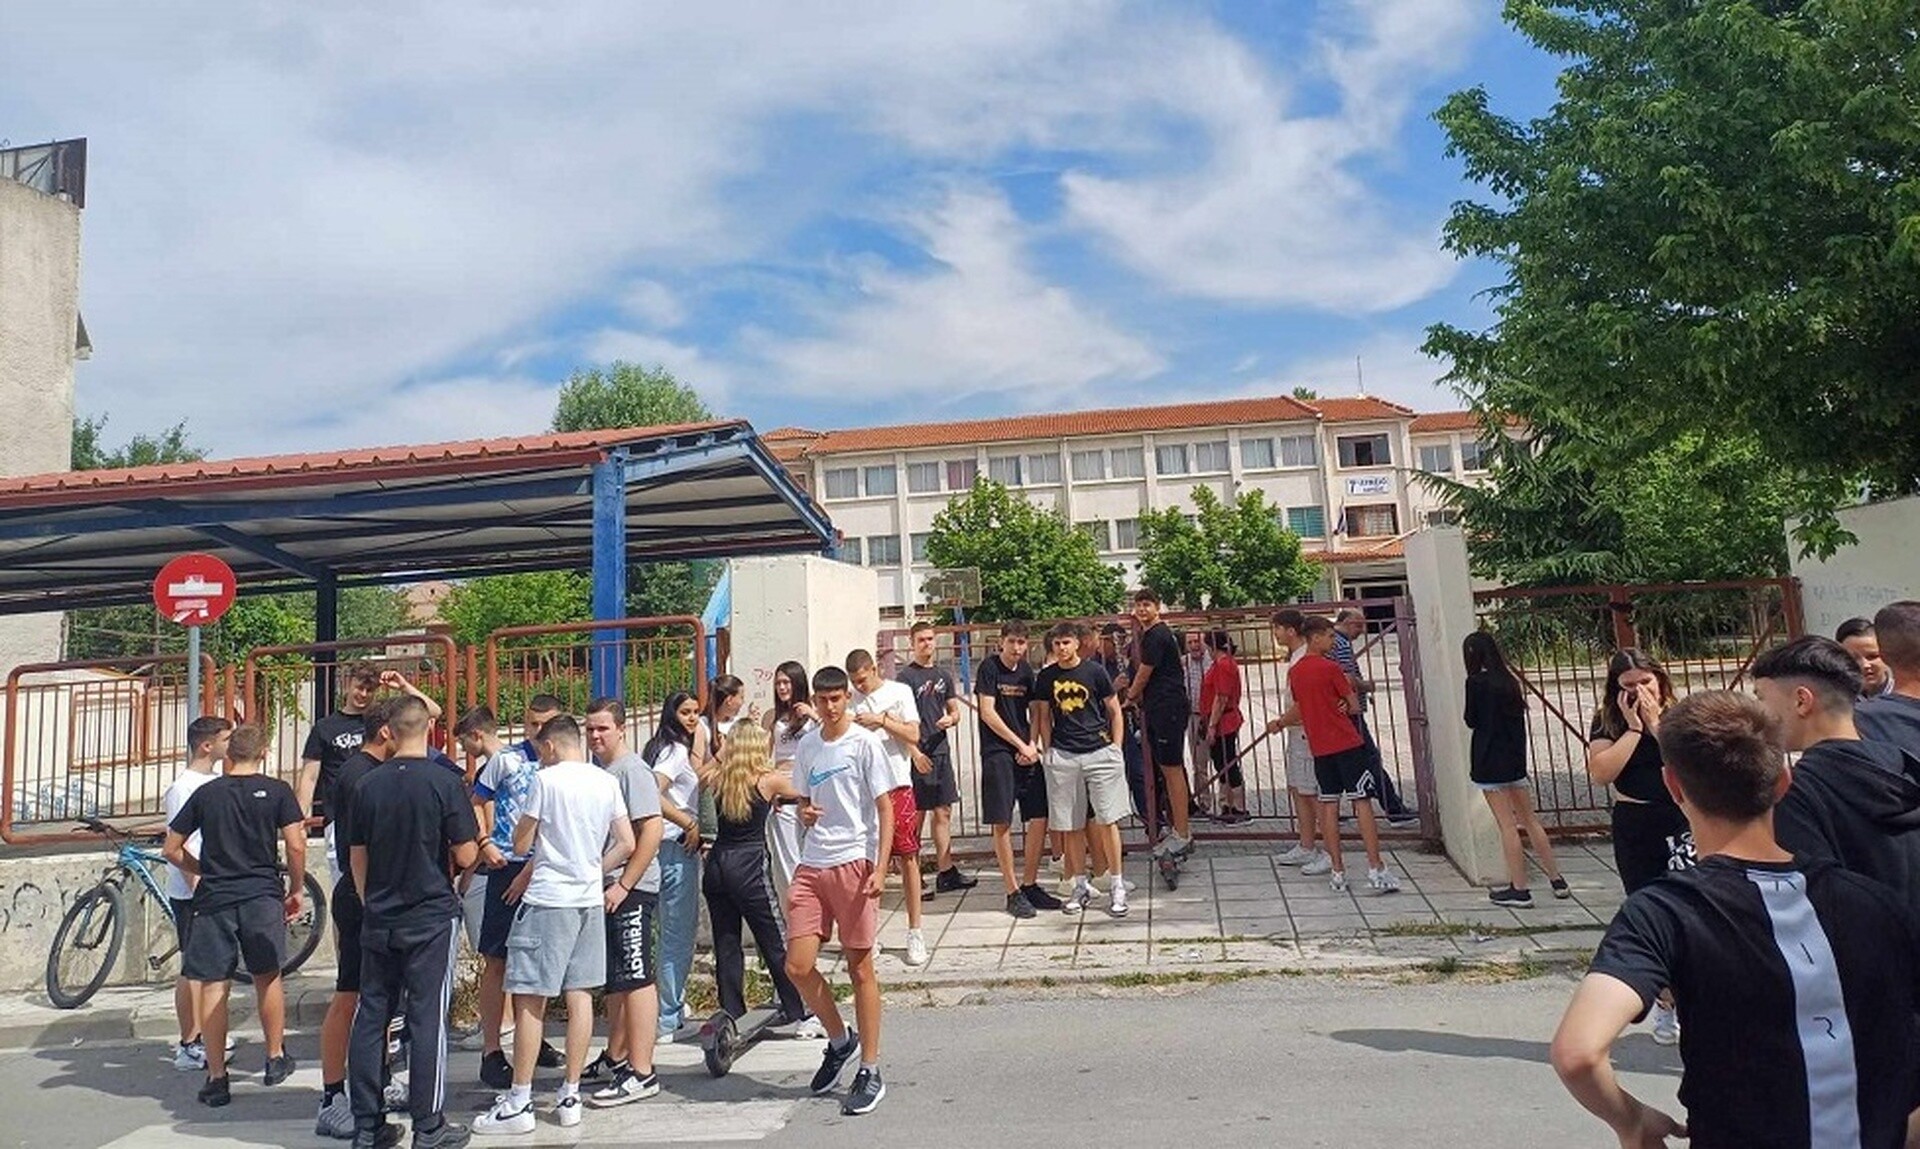 Πανικός σε σχολείο της Λάρισας μετά από τηλεφώνημα για βόμβα - Εκκενώθηκε το κτίριο